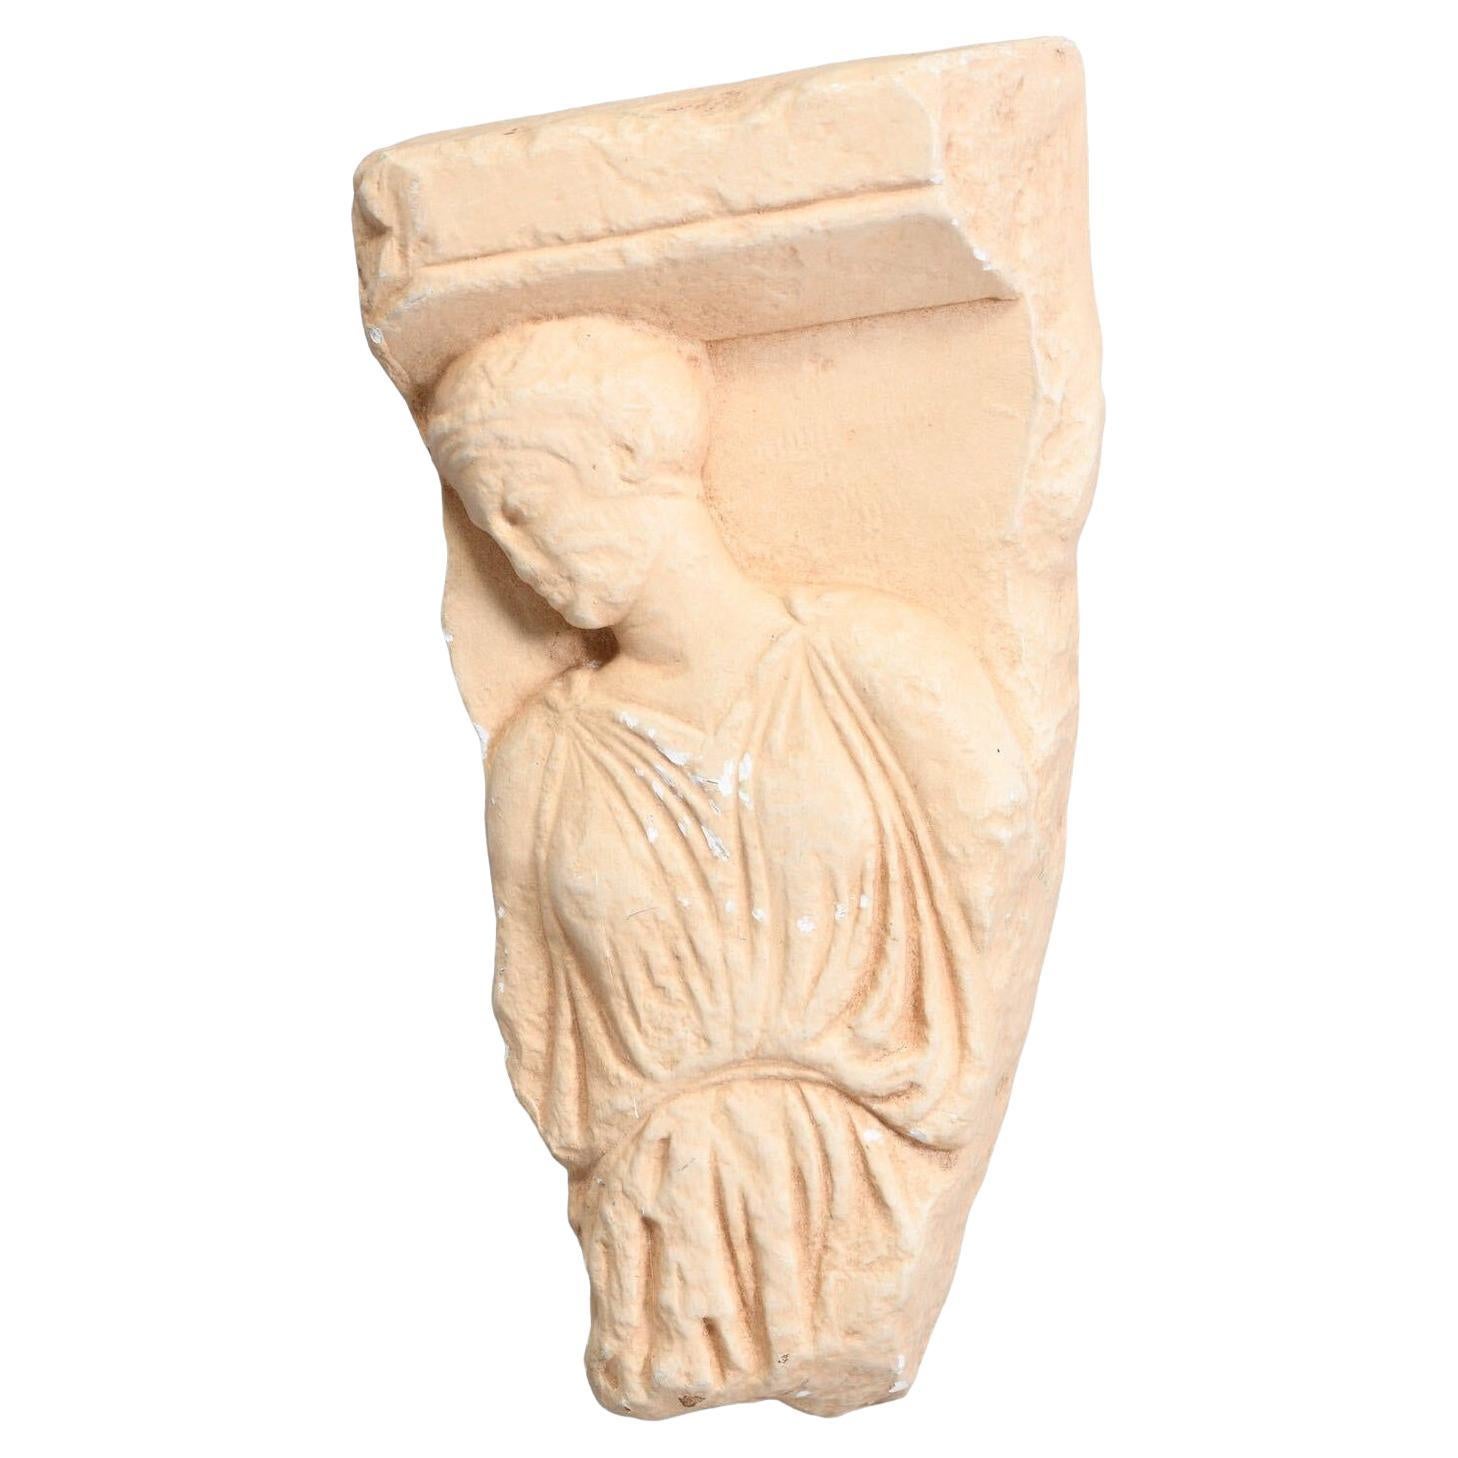 Replica de musée Fragment d'un relief votif en marbre de l'Acropole d'Athènes